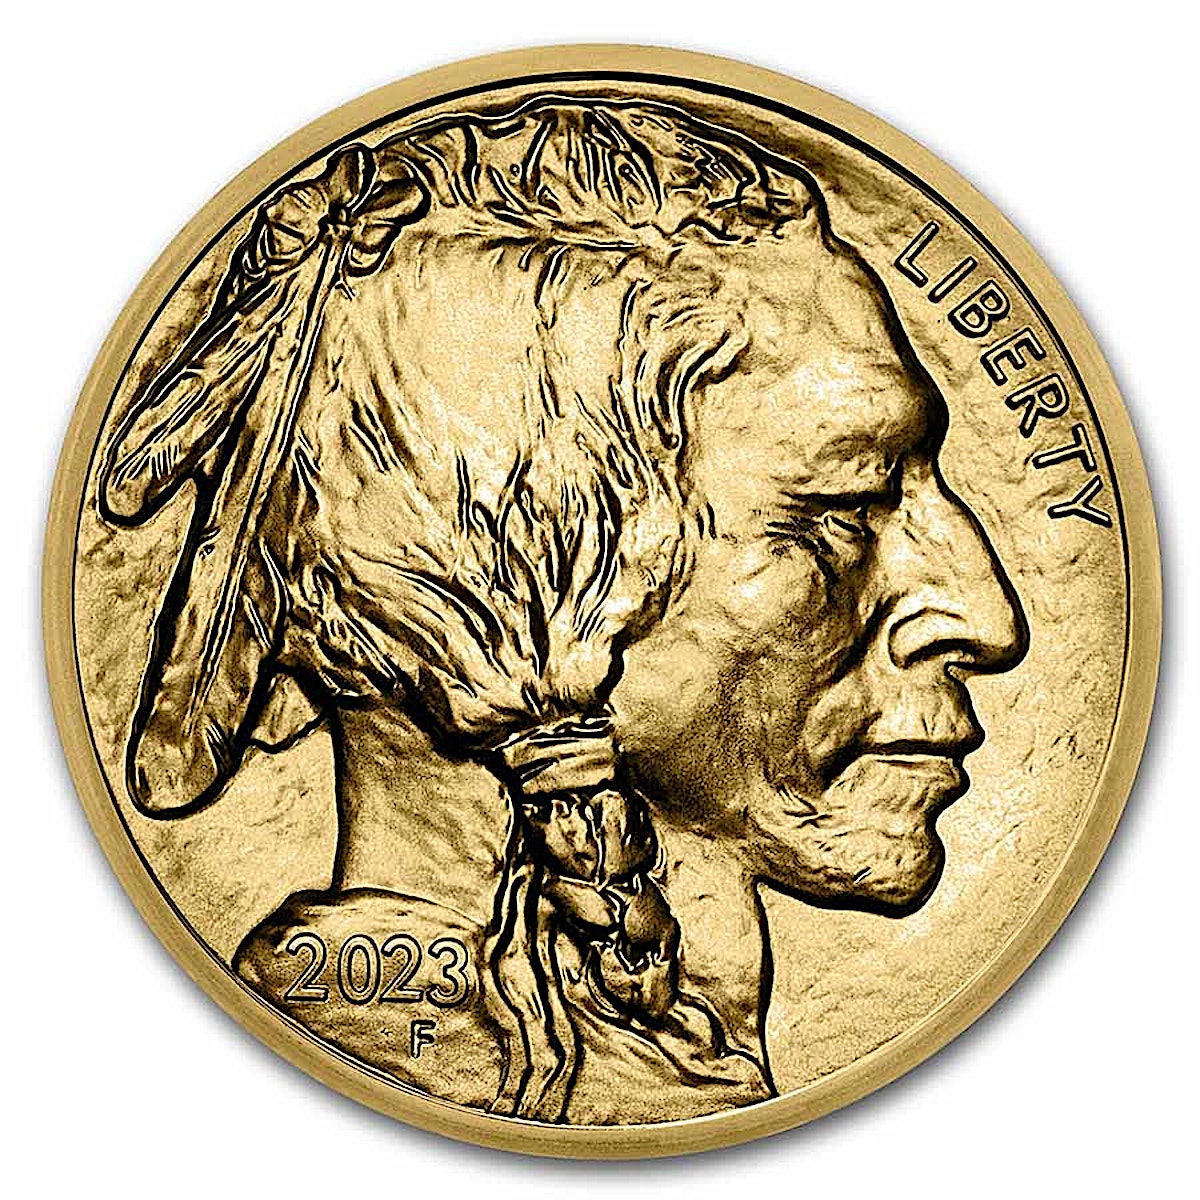 1200 1200 Gold Coin American Buffalo 1oz 2023 Front 